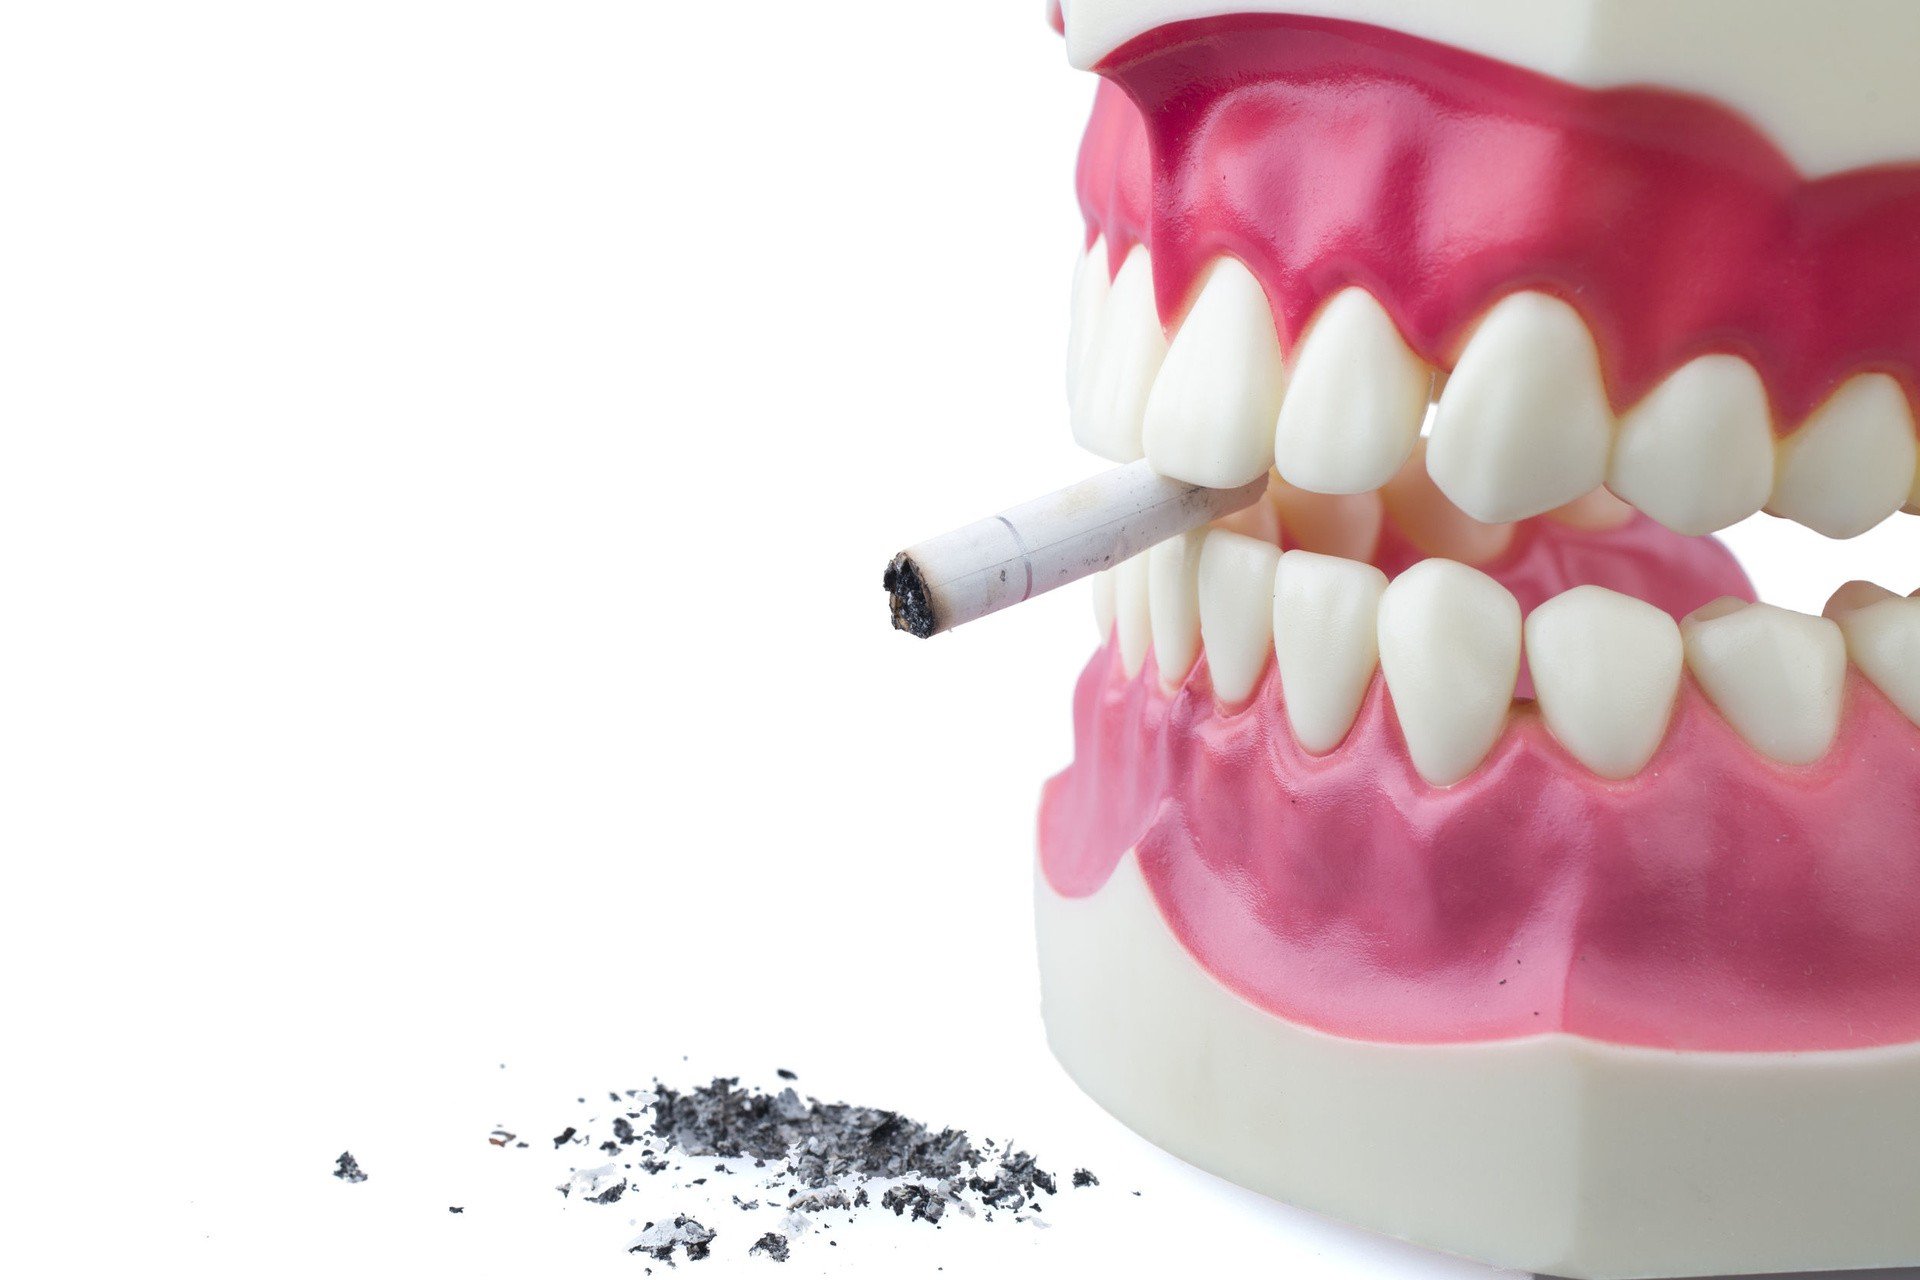 Rak Jamy Ustnej I Jego Rozne Odmiany Nowotwor Jamy Ustnej Objawy Przyczyny I Leczenie Strona Zdrowia